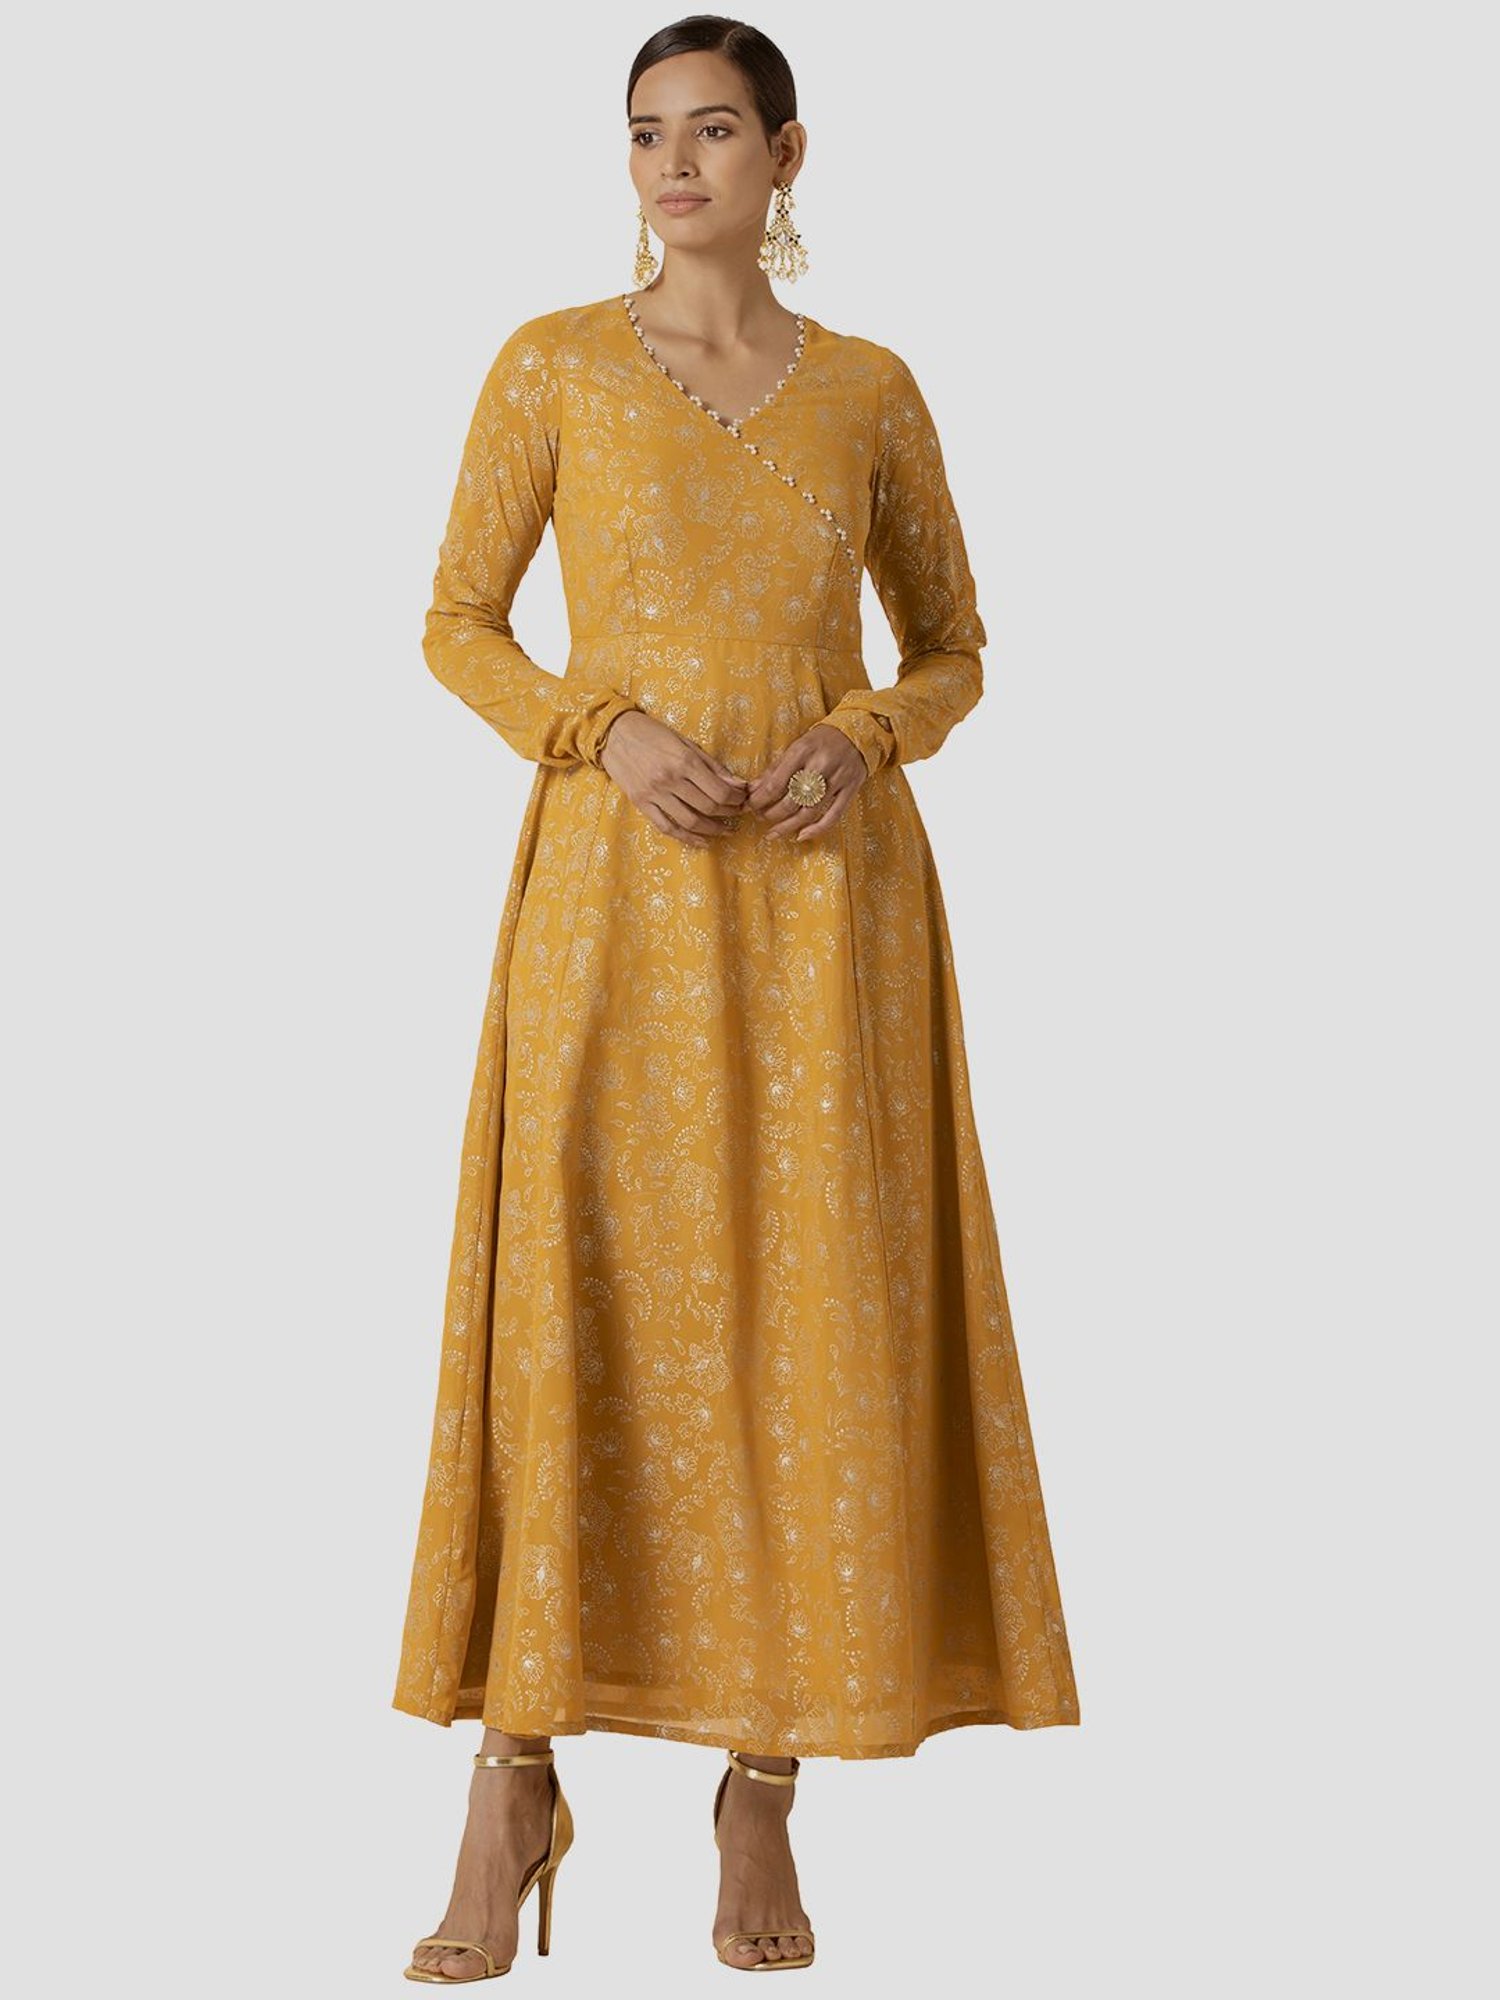 Bec & Bridge Indya Knit Maxi Dress - Size 10 Yellow | eBay